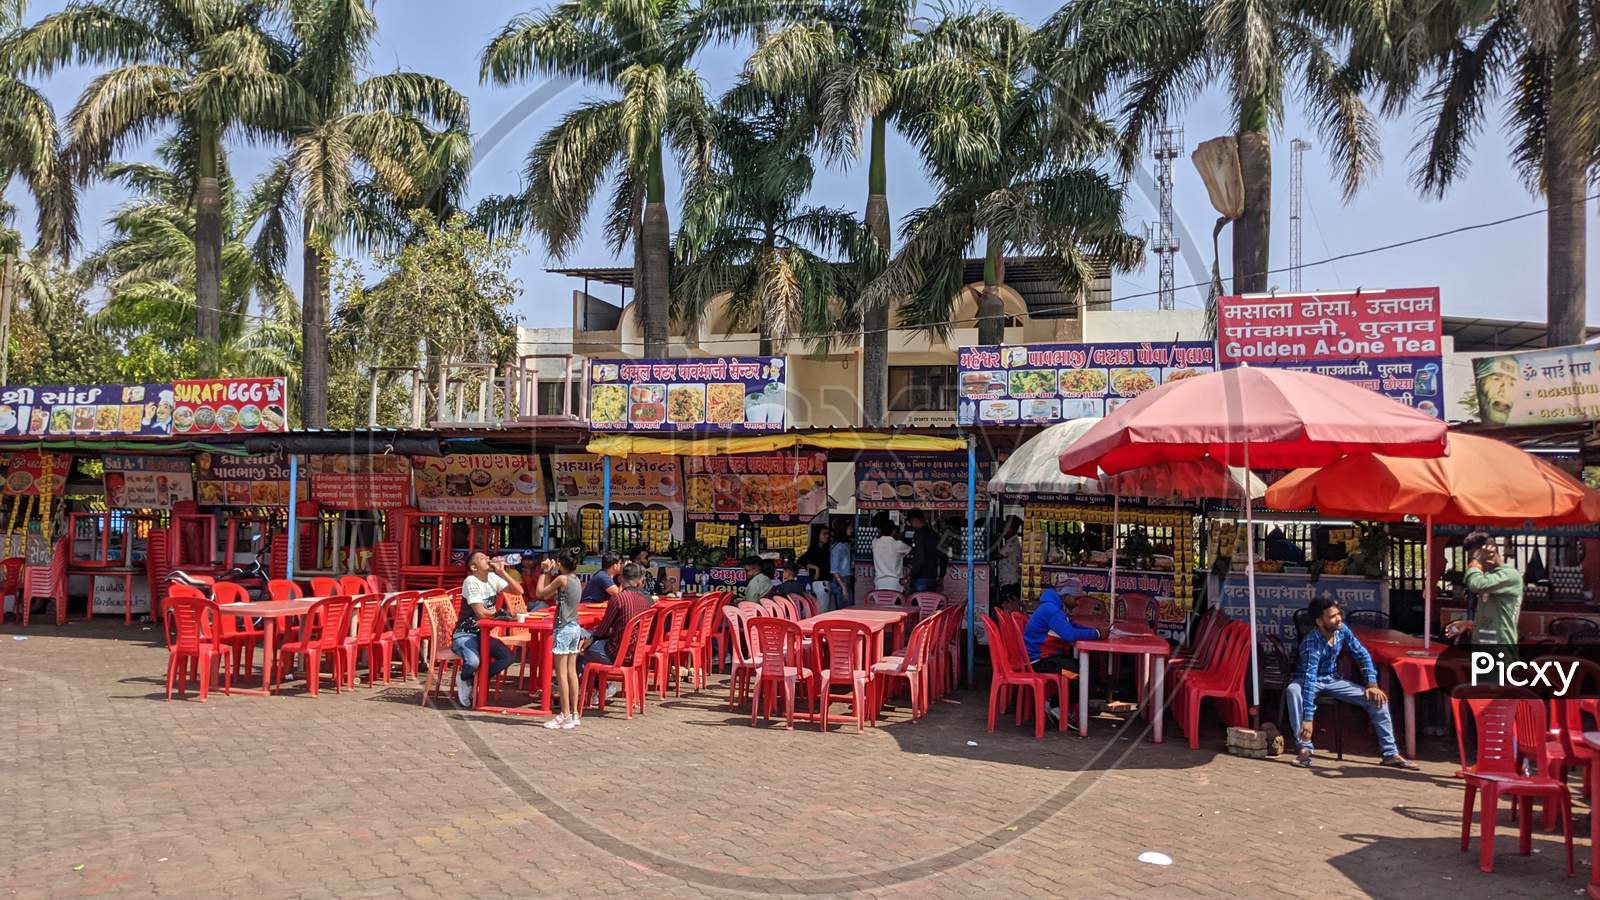 Picnic & Eating Spot In Saputara, Gujarat